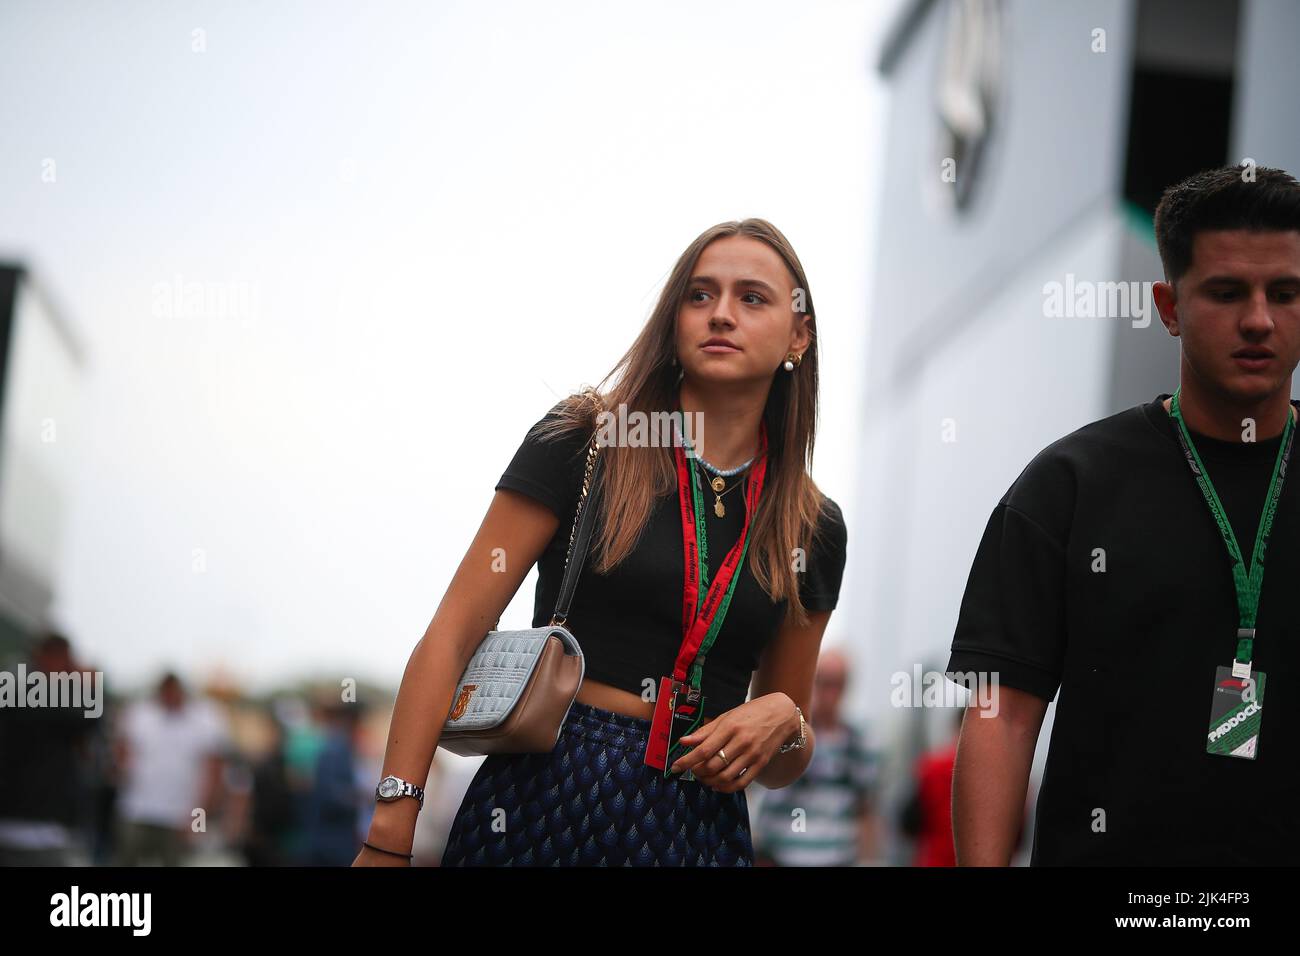 Charlotte Sinè, petite amie de Charles Leclerc, Ferrari pendant le GP hongrois, 28-31 juillet 2022 au Hungaroring, Formule 1 Championnat du monde 2022. Banque D'Images